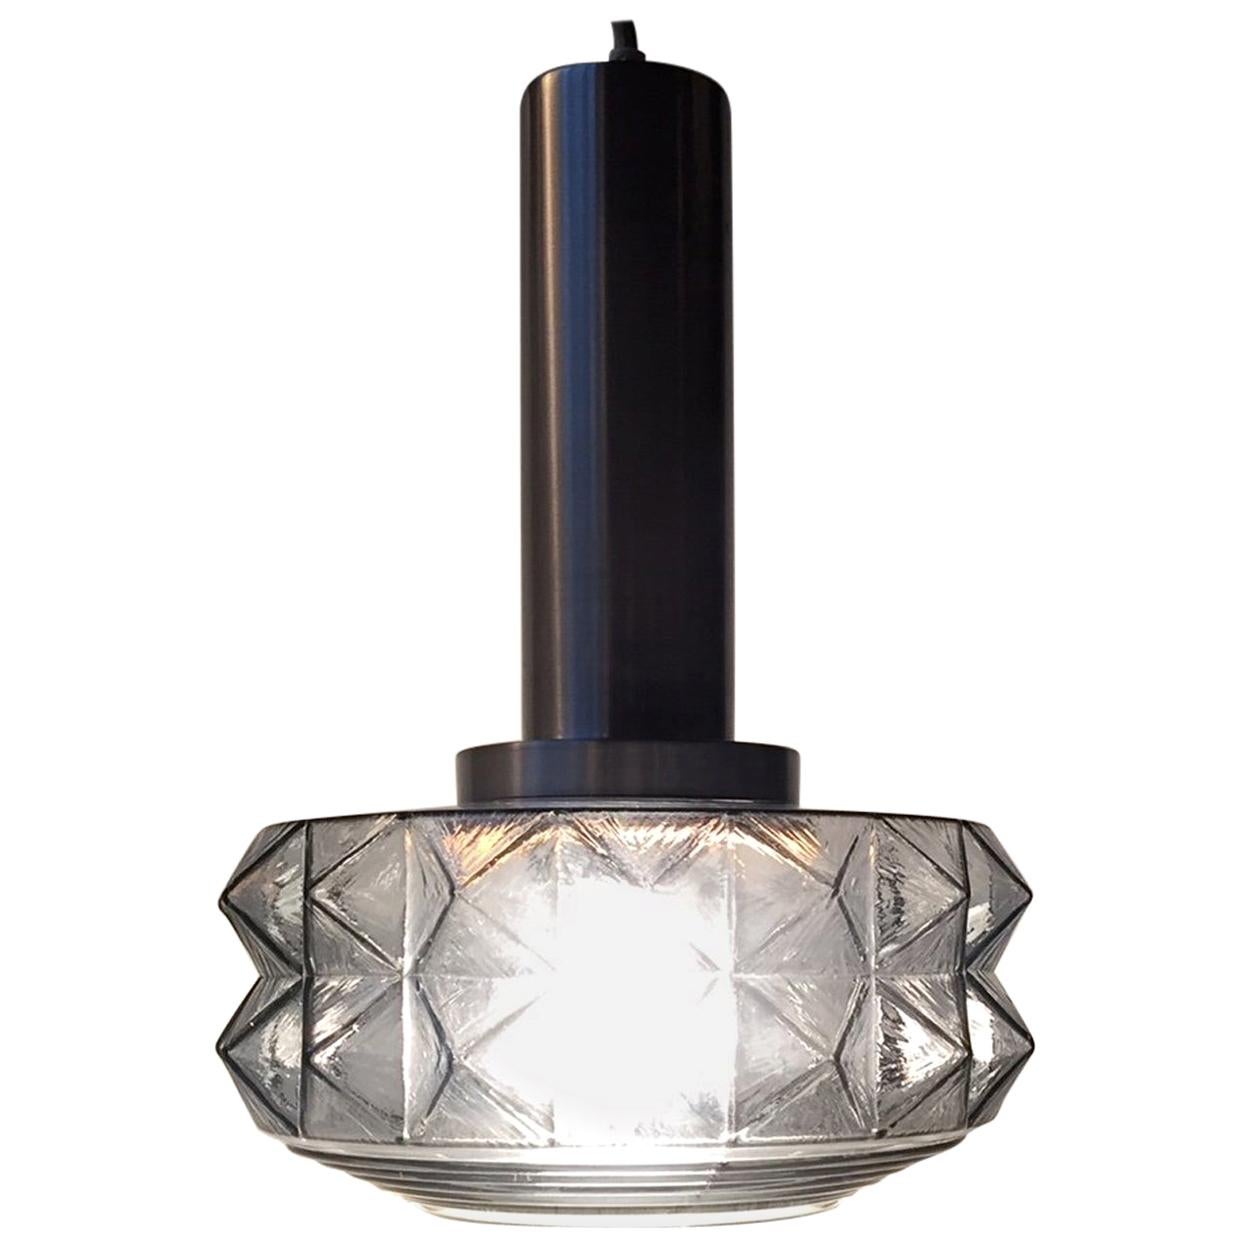 Midcentury Danish Ceiling Lamp in Smoke Glass from Vitrika, 1960s